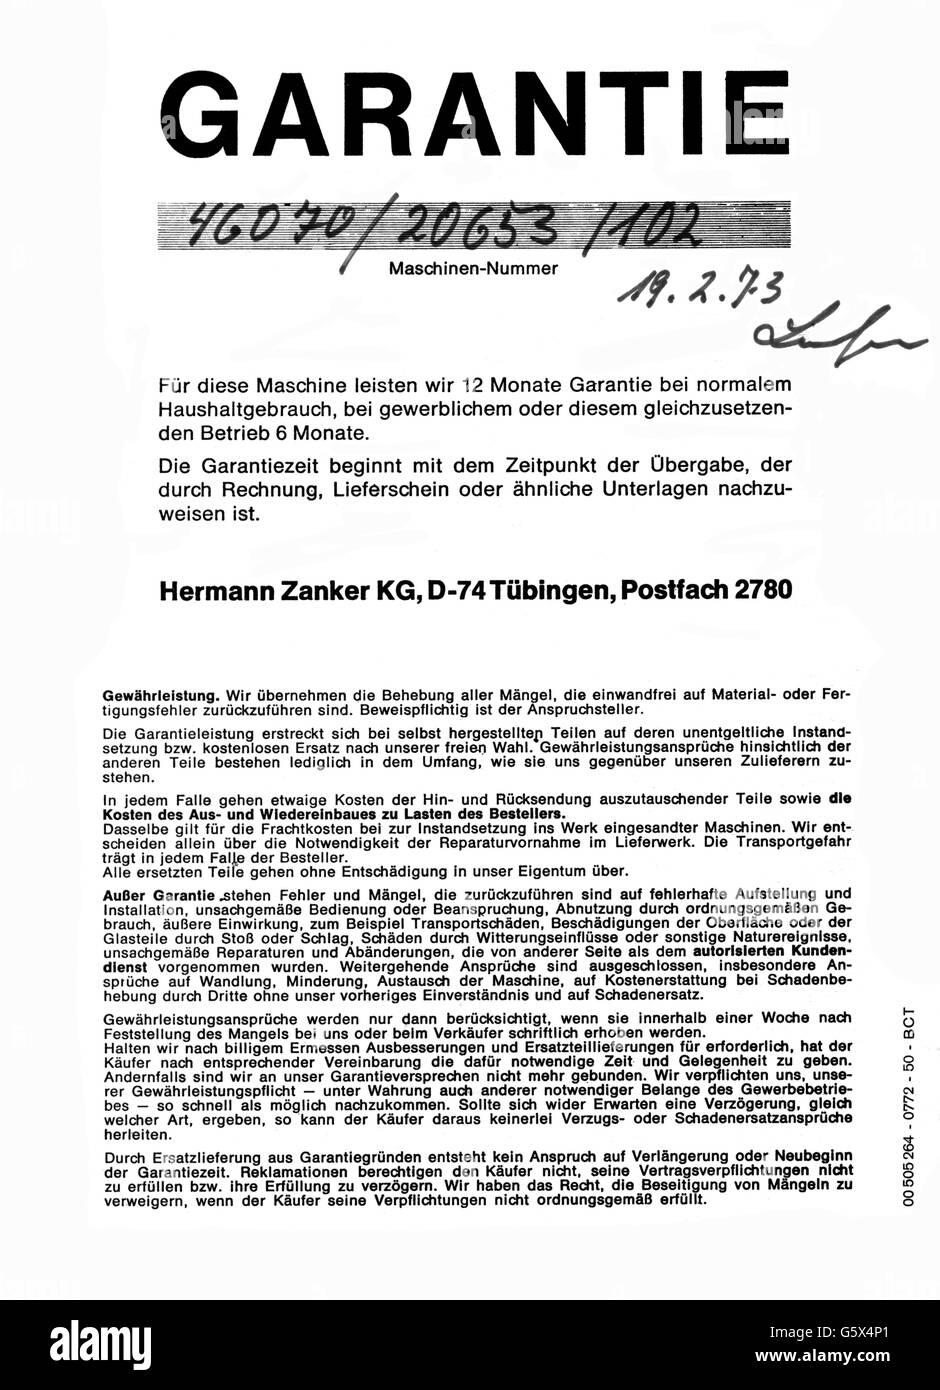 Haushalt, Haushaltsgerät, Garantie für Waschmaschine durch Hermann Zanker KG, Tübingen, ausgestellt am 19.2.1973, Zusatz-Rechteklärung-nicht möglich Stockfoto